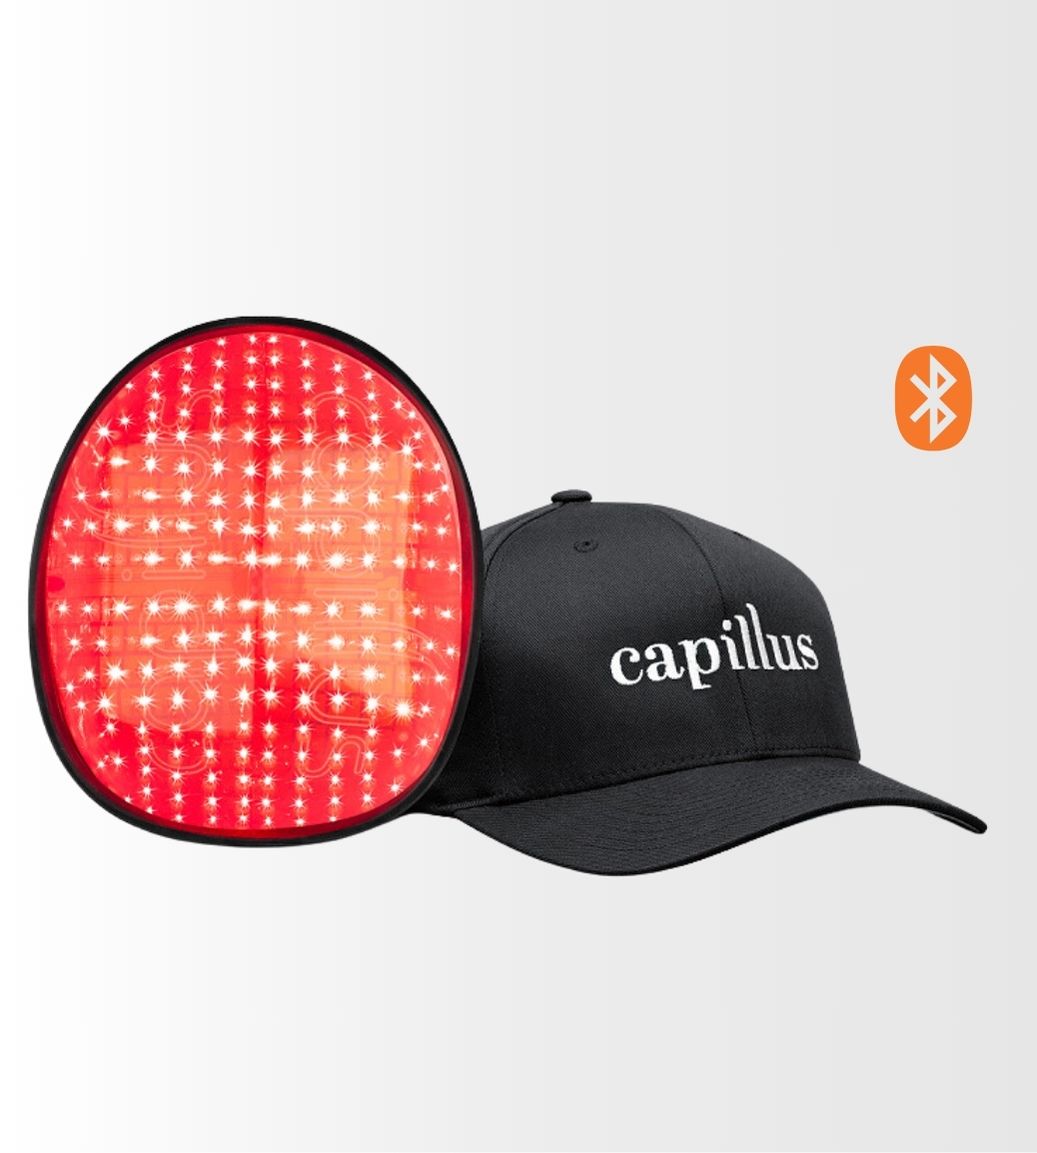 Capillus Plus S1 | 214 laser - Bluetooth